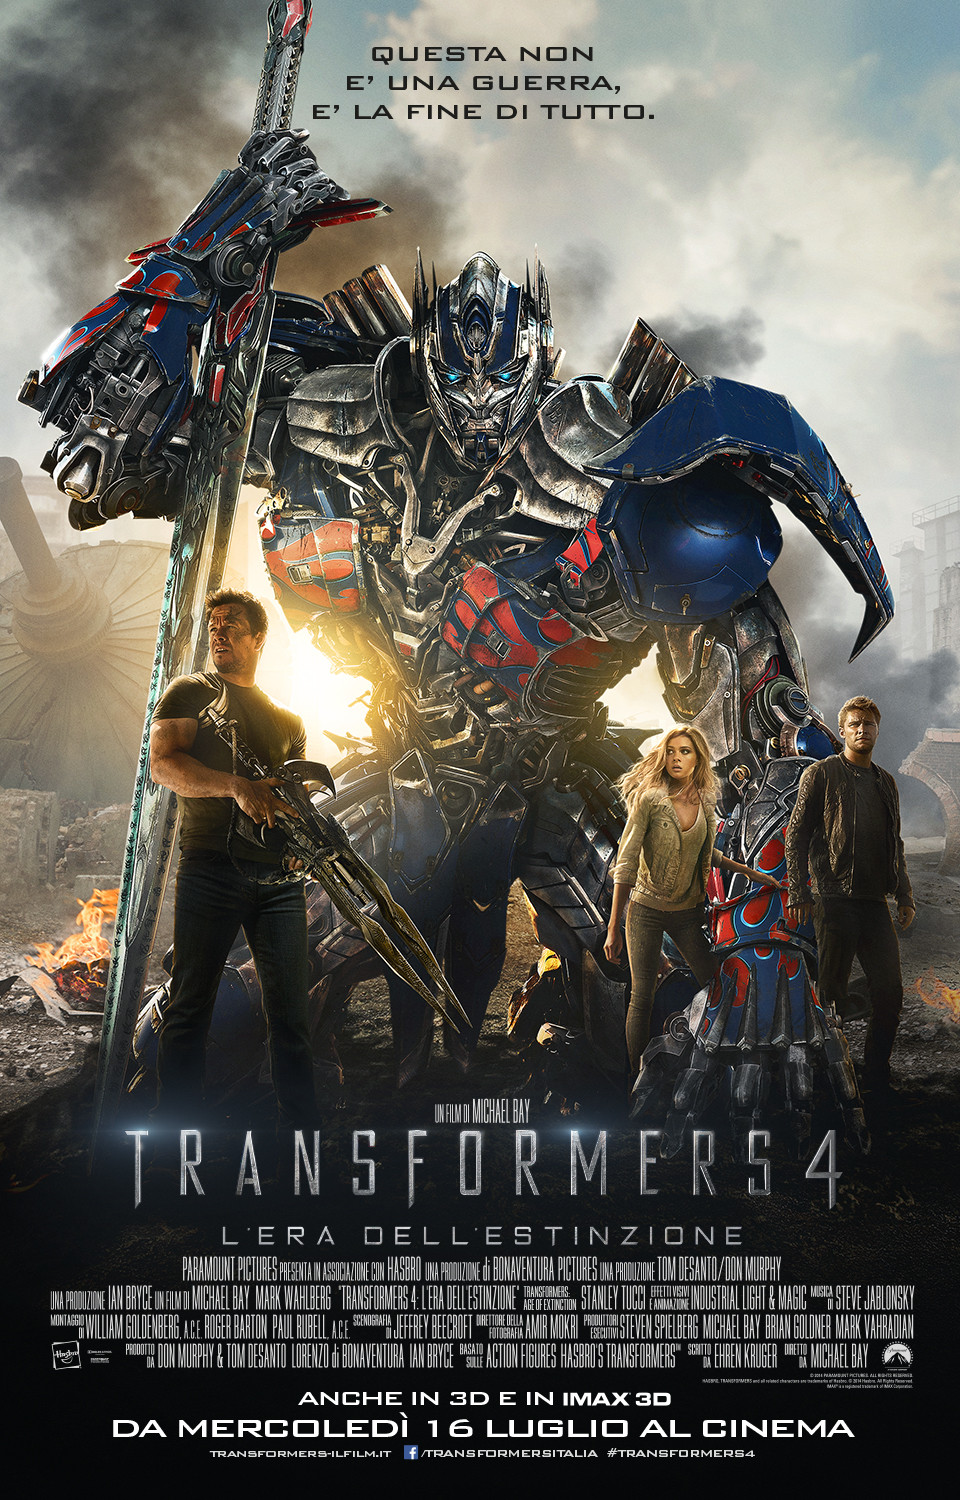 CinemaSTop, ancora i Transformers e il ritorno live dei Monty Python - transformers 4 cinema cinemaStop - Gay.it